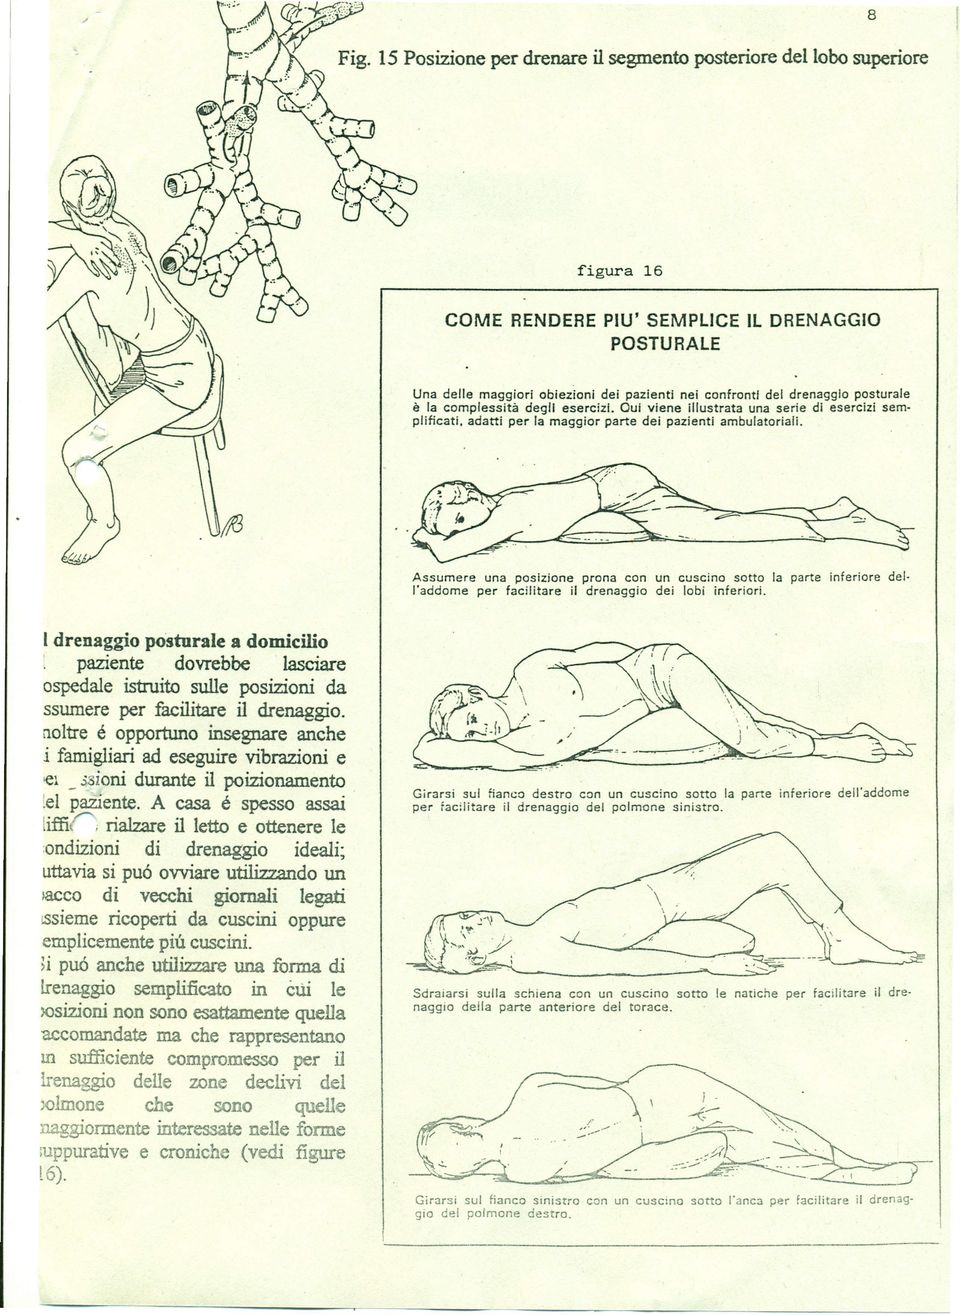 posturale è la complessità degli esercizi. Oui viene illustrata una serie di esercizi semplificati. adatti per la maggior parte dei pazienti ambulatoriali.